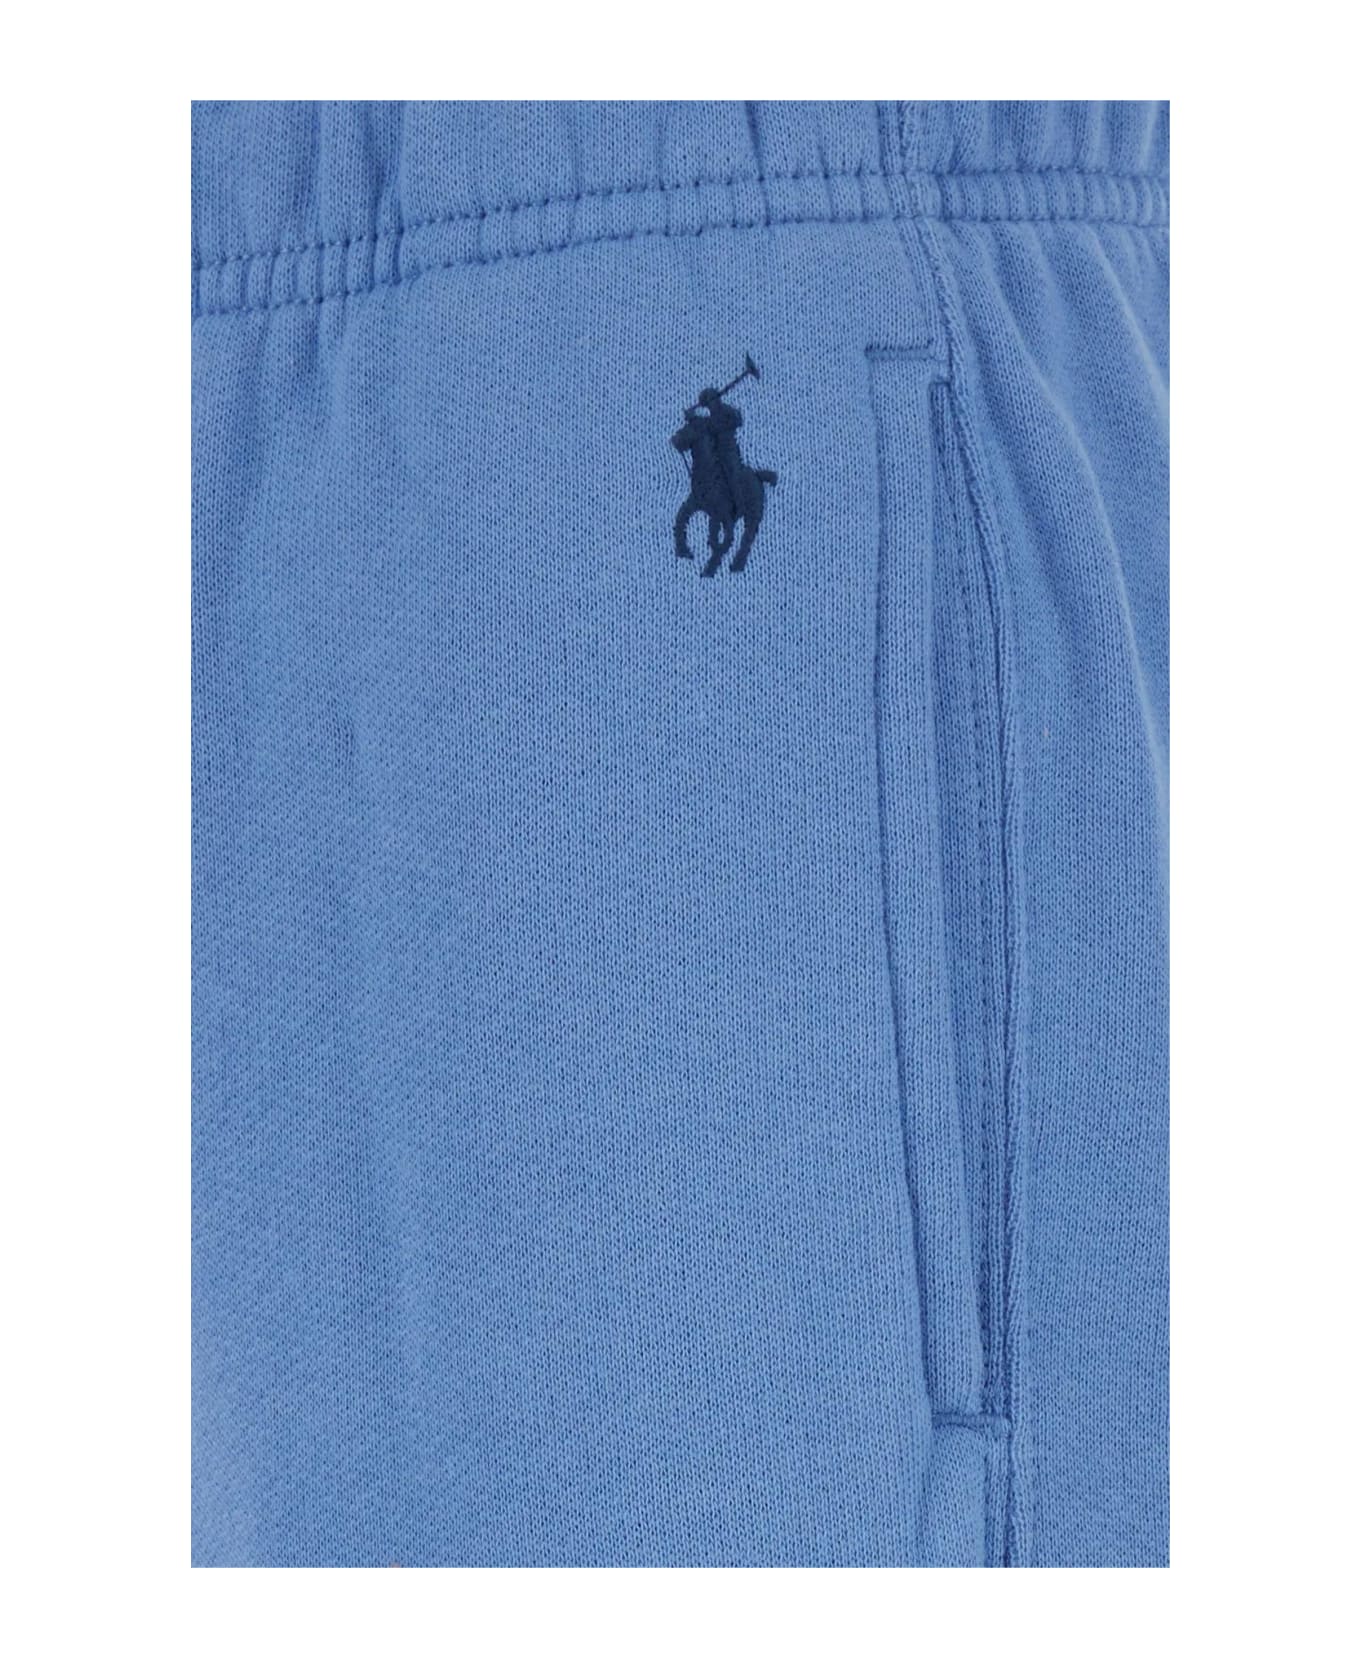 Polo Ralph Lauren Light Blue Cotton Blend Joggers - SUMMERBLUE ボトムス